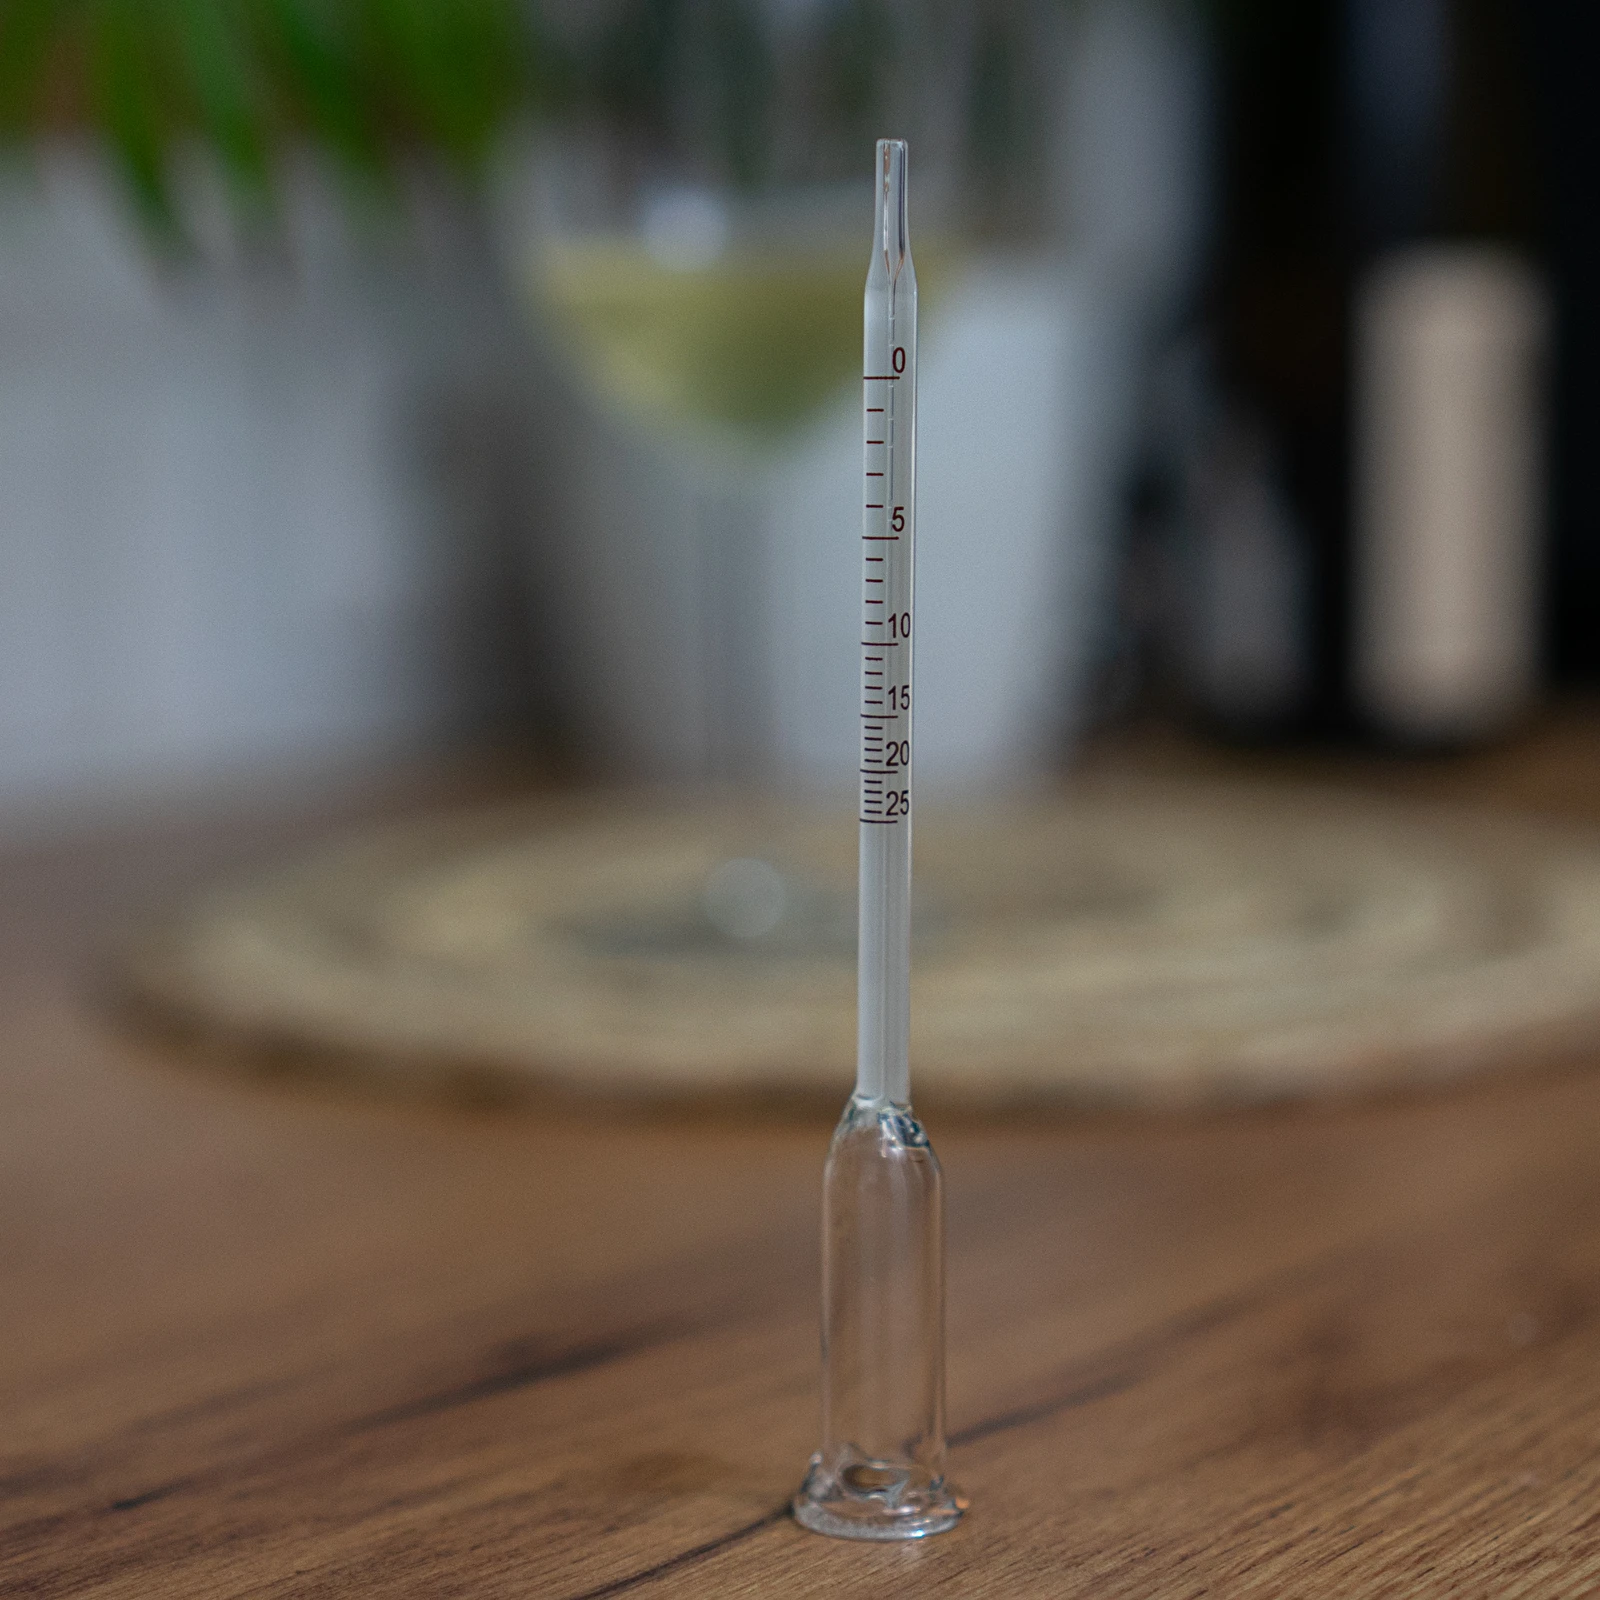 Alkoholgehalt im Wein messen – so geht es (nicht) 